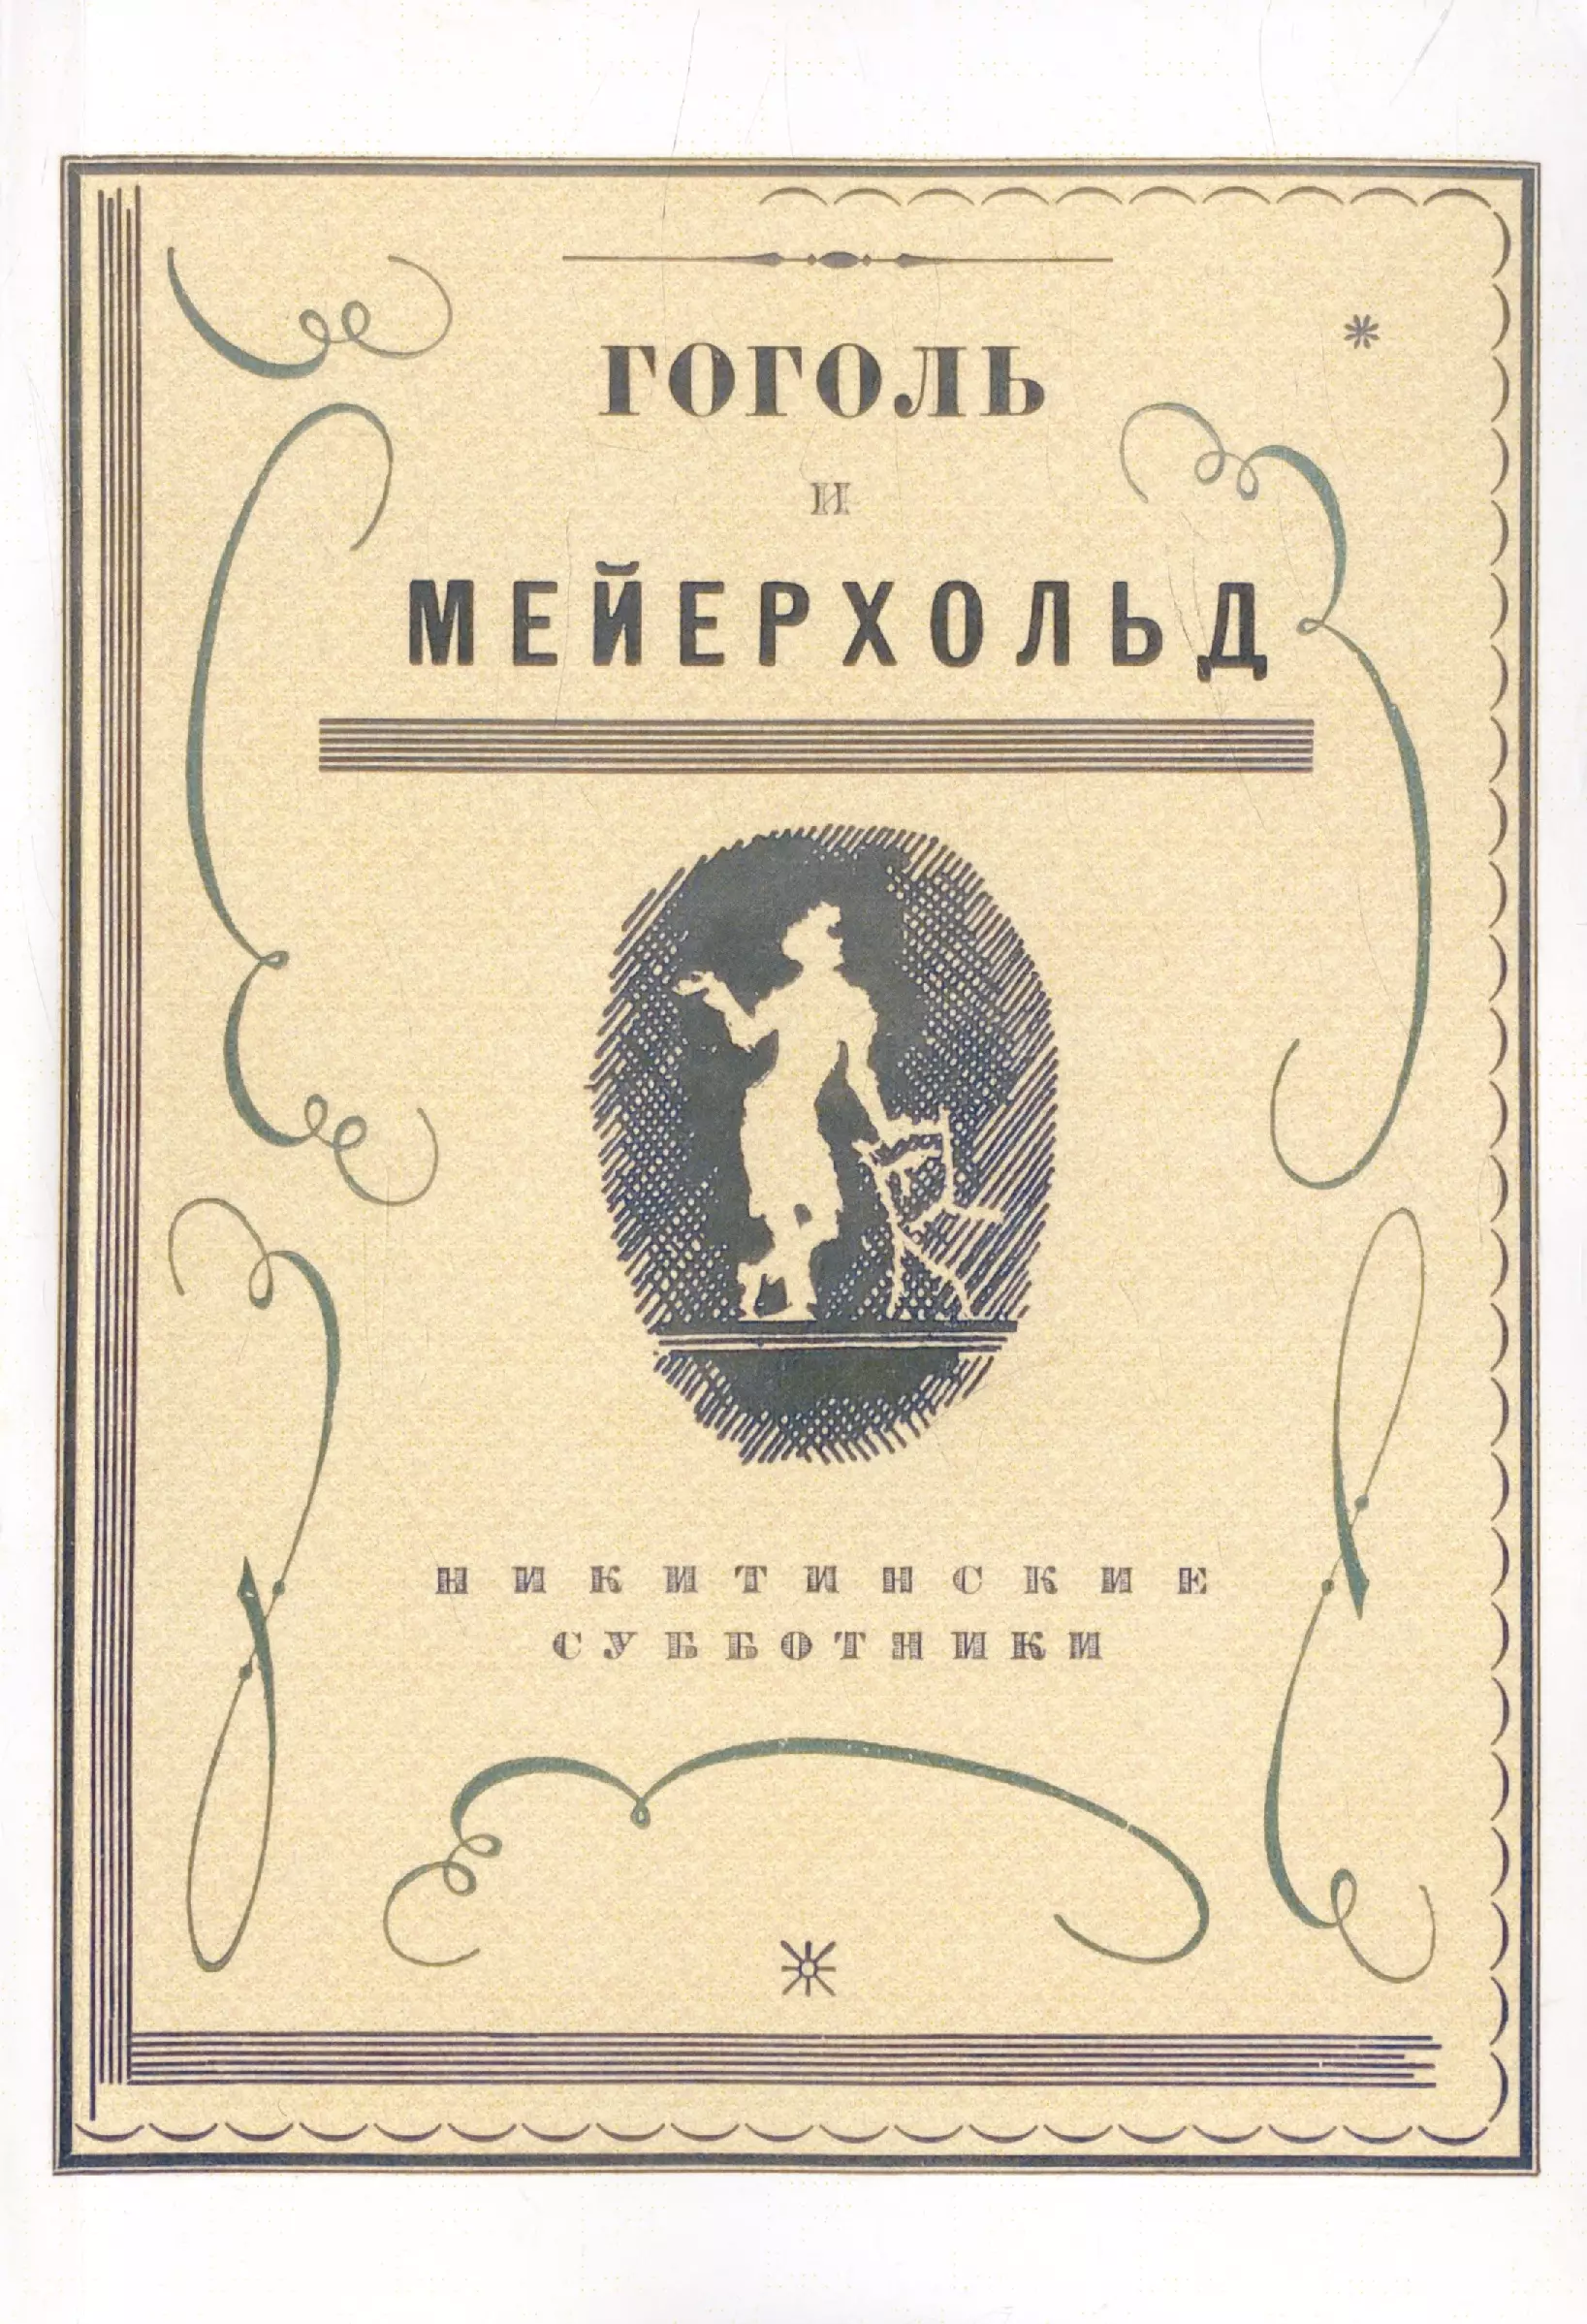 Гоголь и Мейерхольд: сборник (Репринтное издание) музей квартира вс э мейерхольда путеводитель